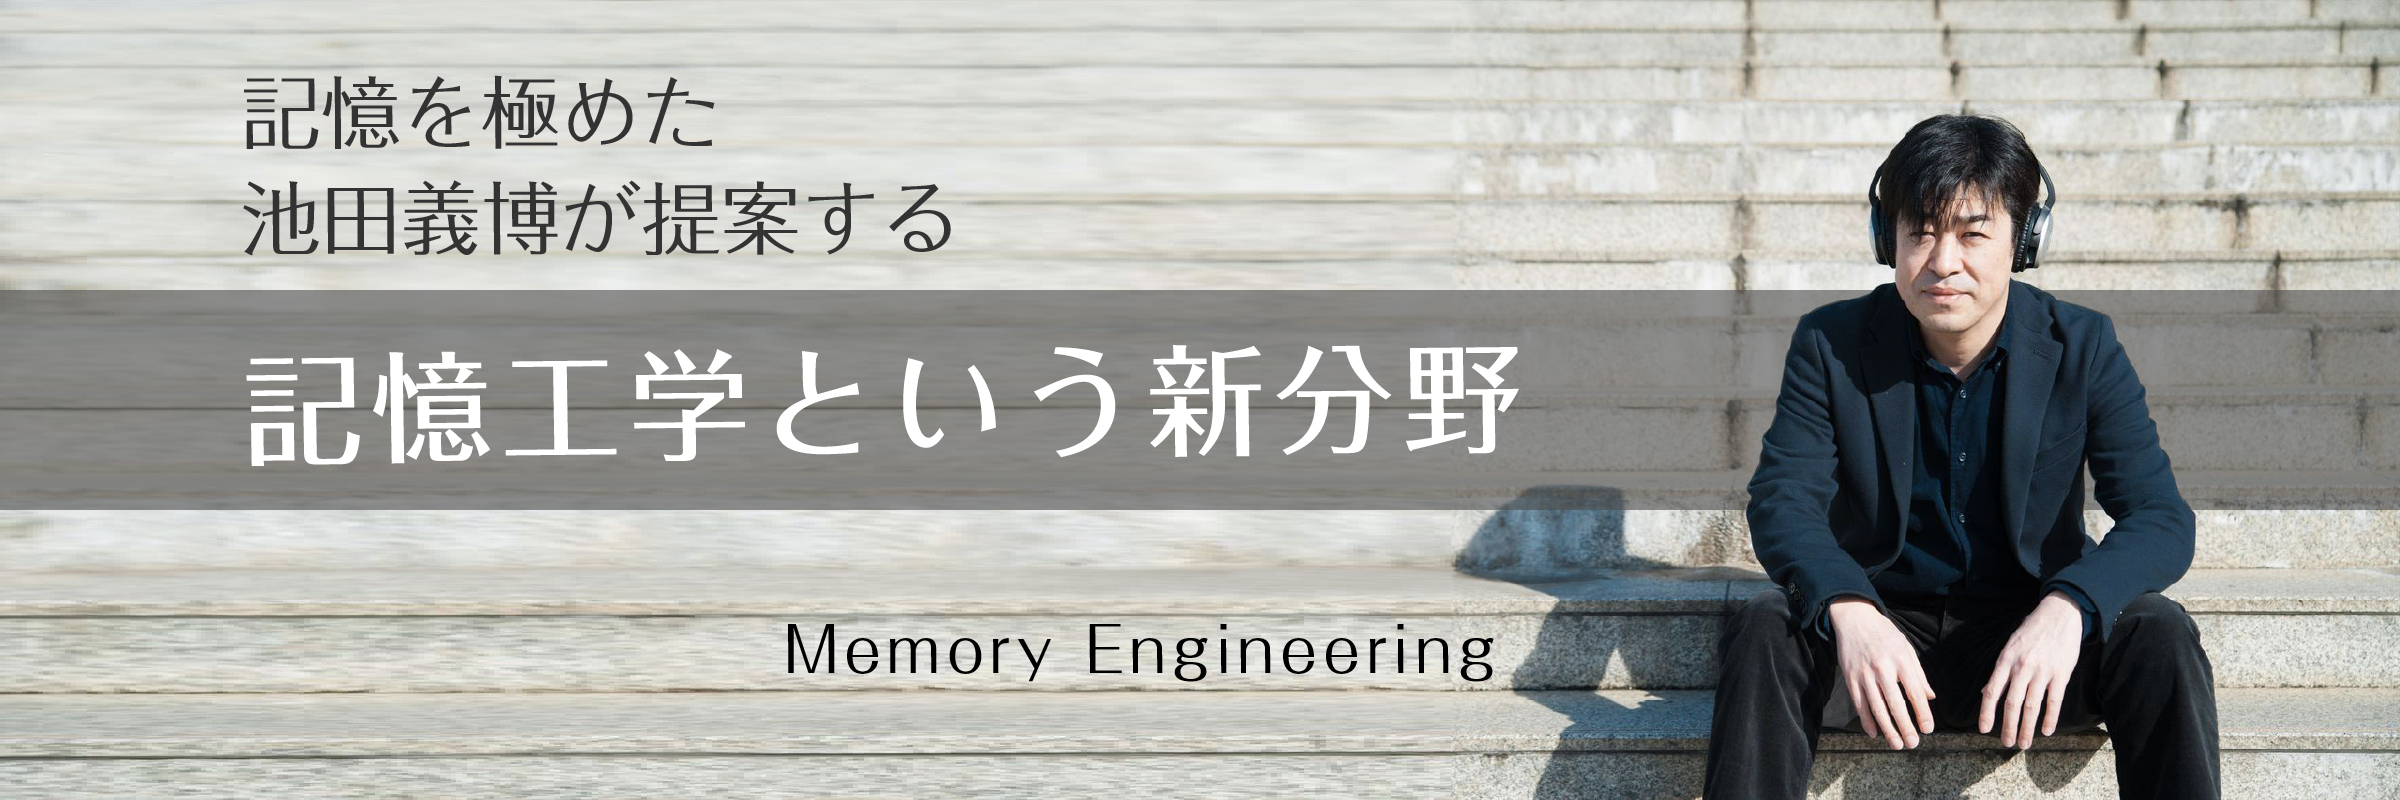 記憶を極めた池田義博が提案する記憶工学という新分野